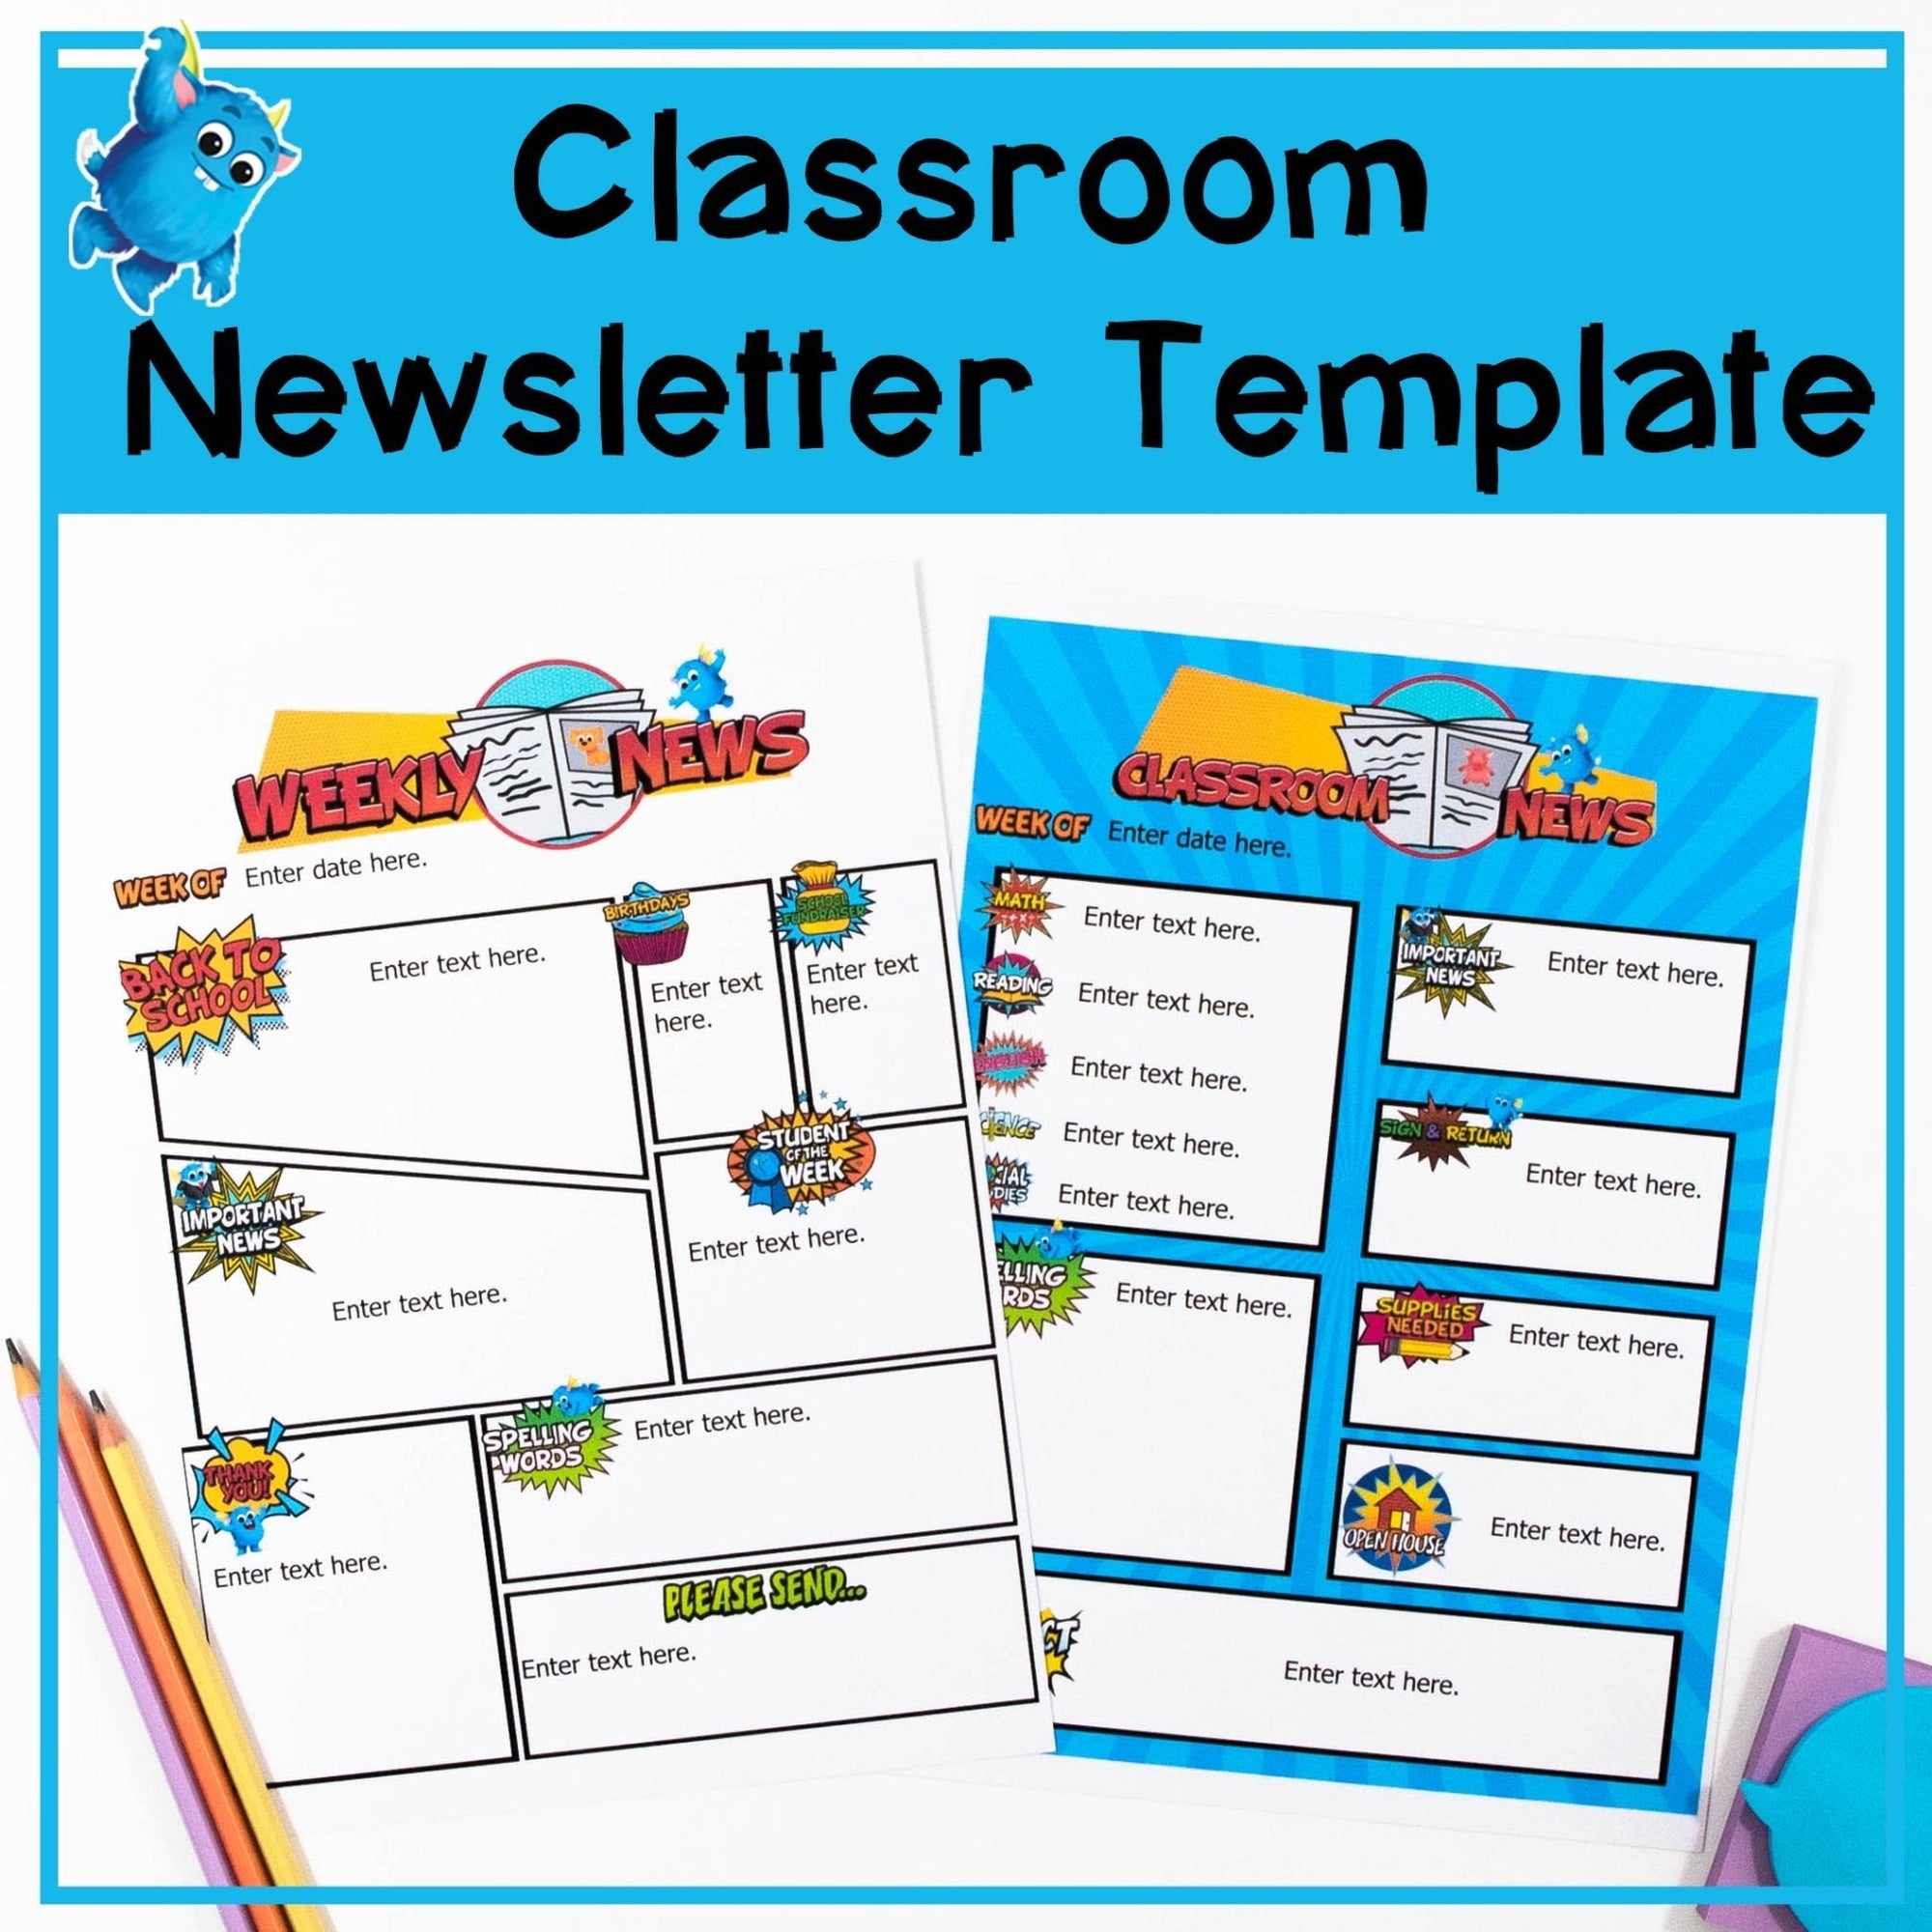 Classroom Newsletter Template - Your Teacher's Pet Creature